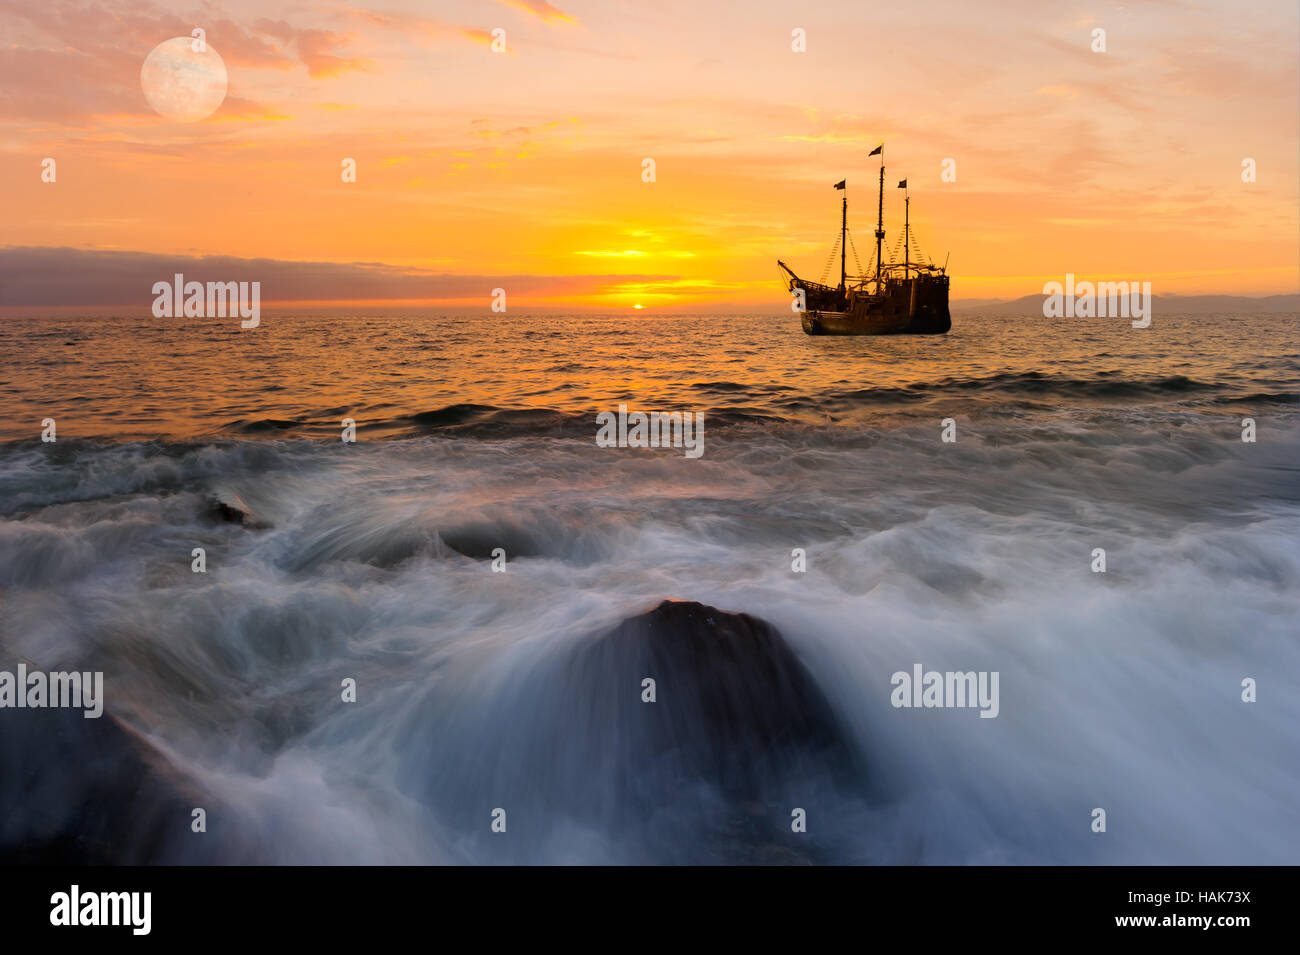 Ocean sunset ship est un ancien bateau de pirate en mer avec drapeaux flottants au coucher du soleil dans un ciel rempli de couleur orange. Banque D'Images